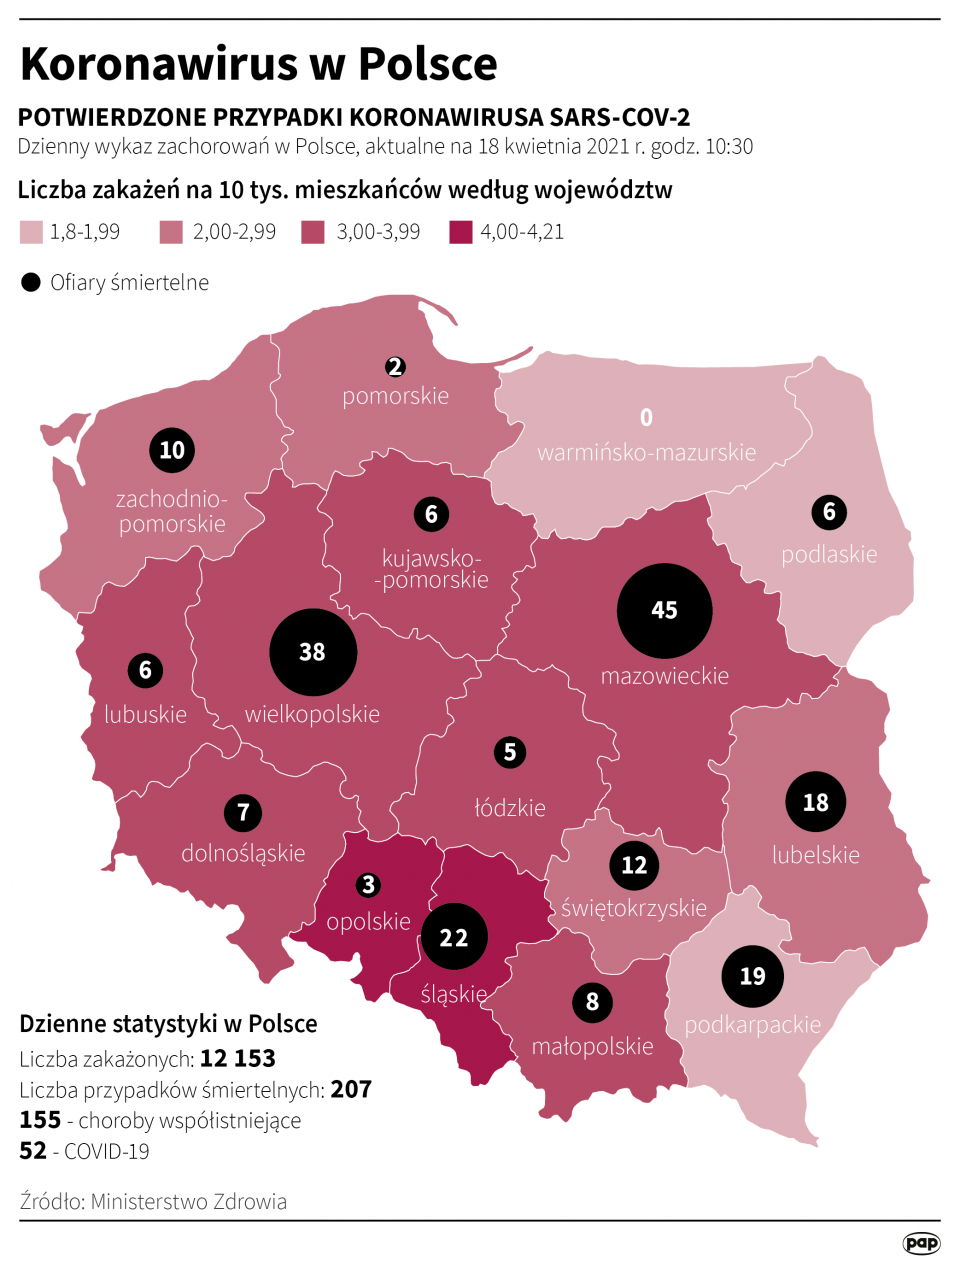 Koronawirus w Polsce stan na 18 kwietnia [autor: Maria Samczuk, źródło: PAP]